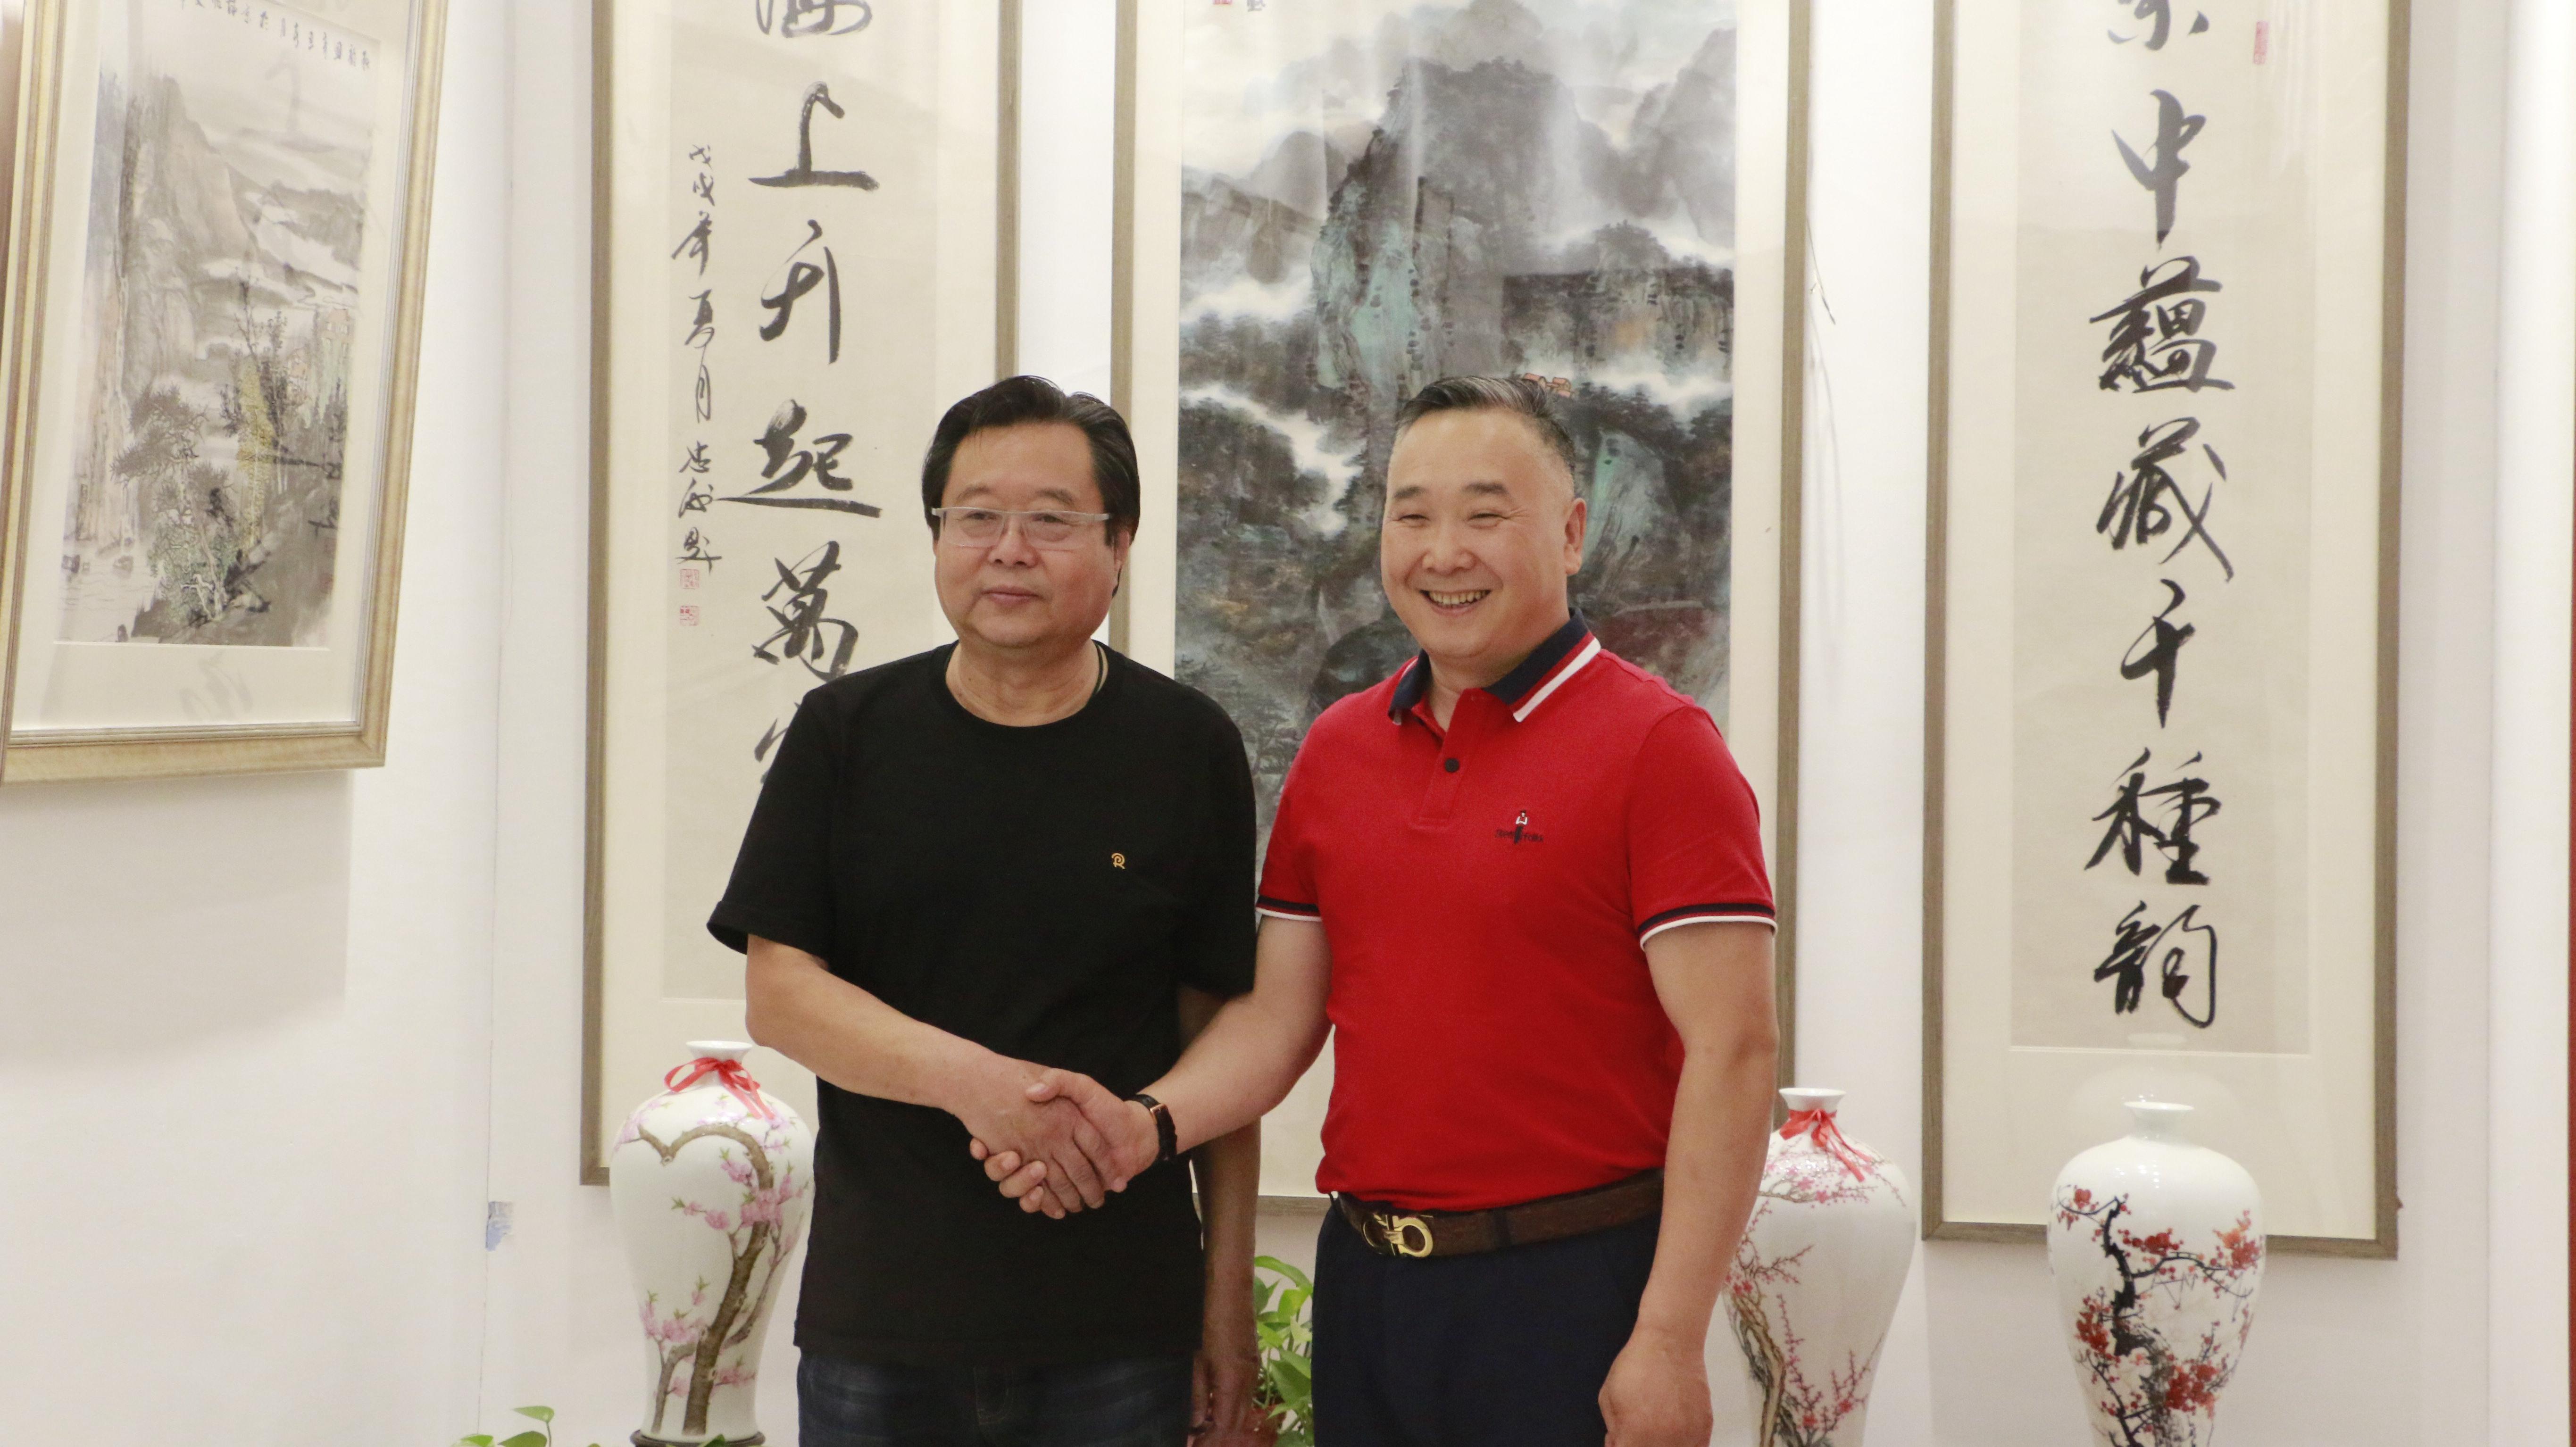 著名画家、美术教育家刘存惠先生到访京海墨韵